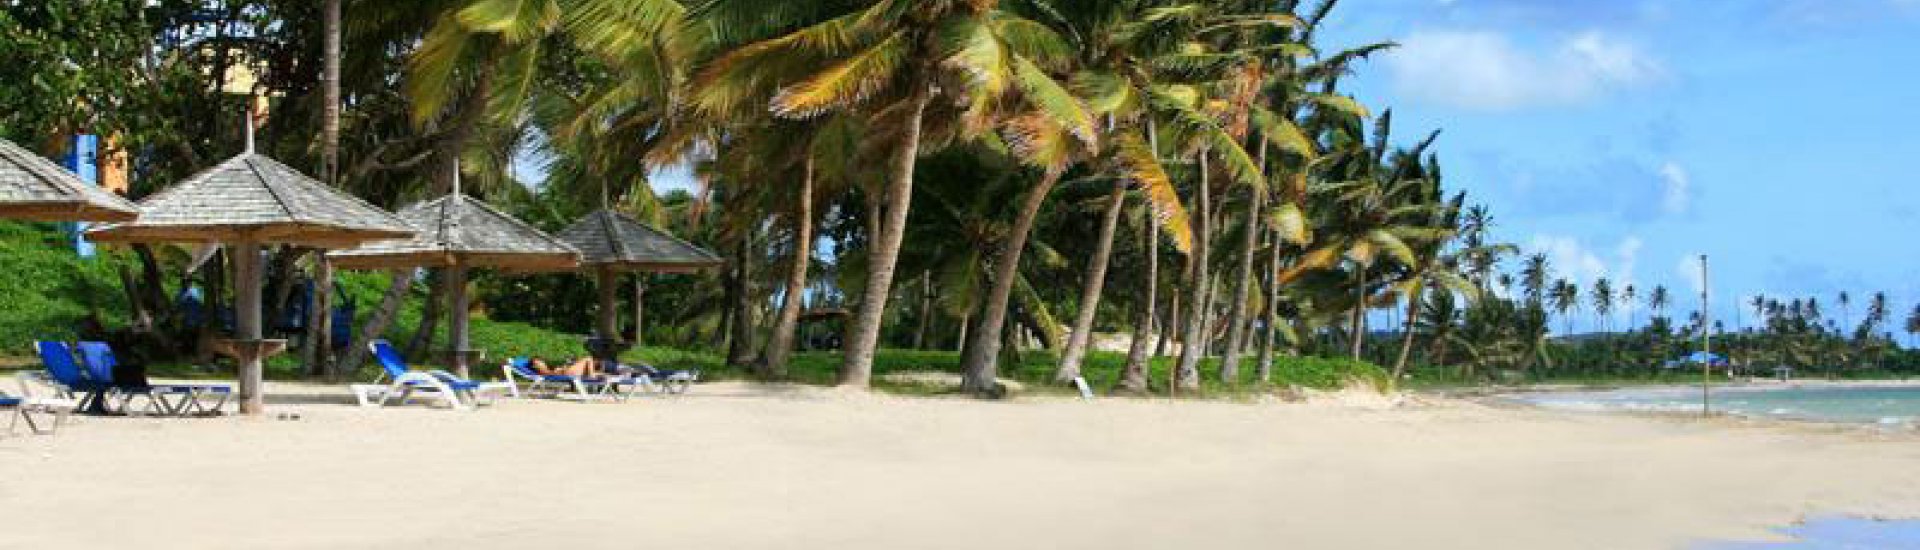 Coconut Bay Resort St Lucia | The Family Holidays Company